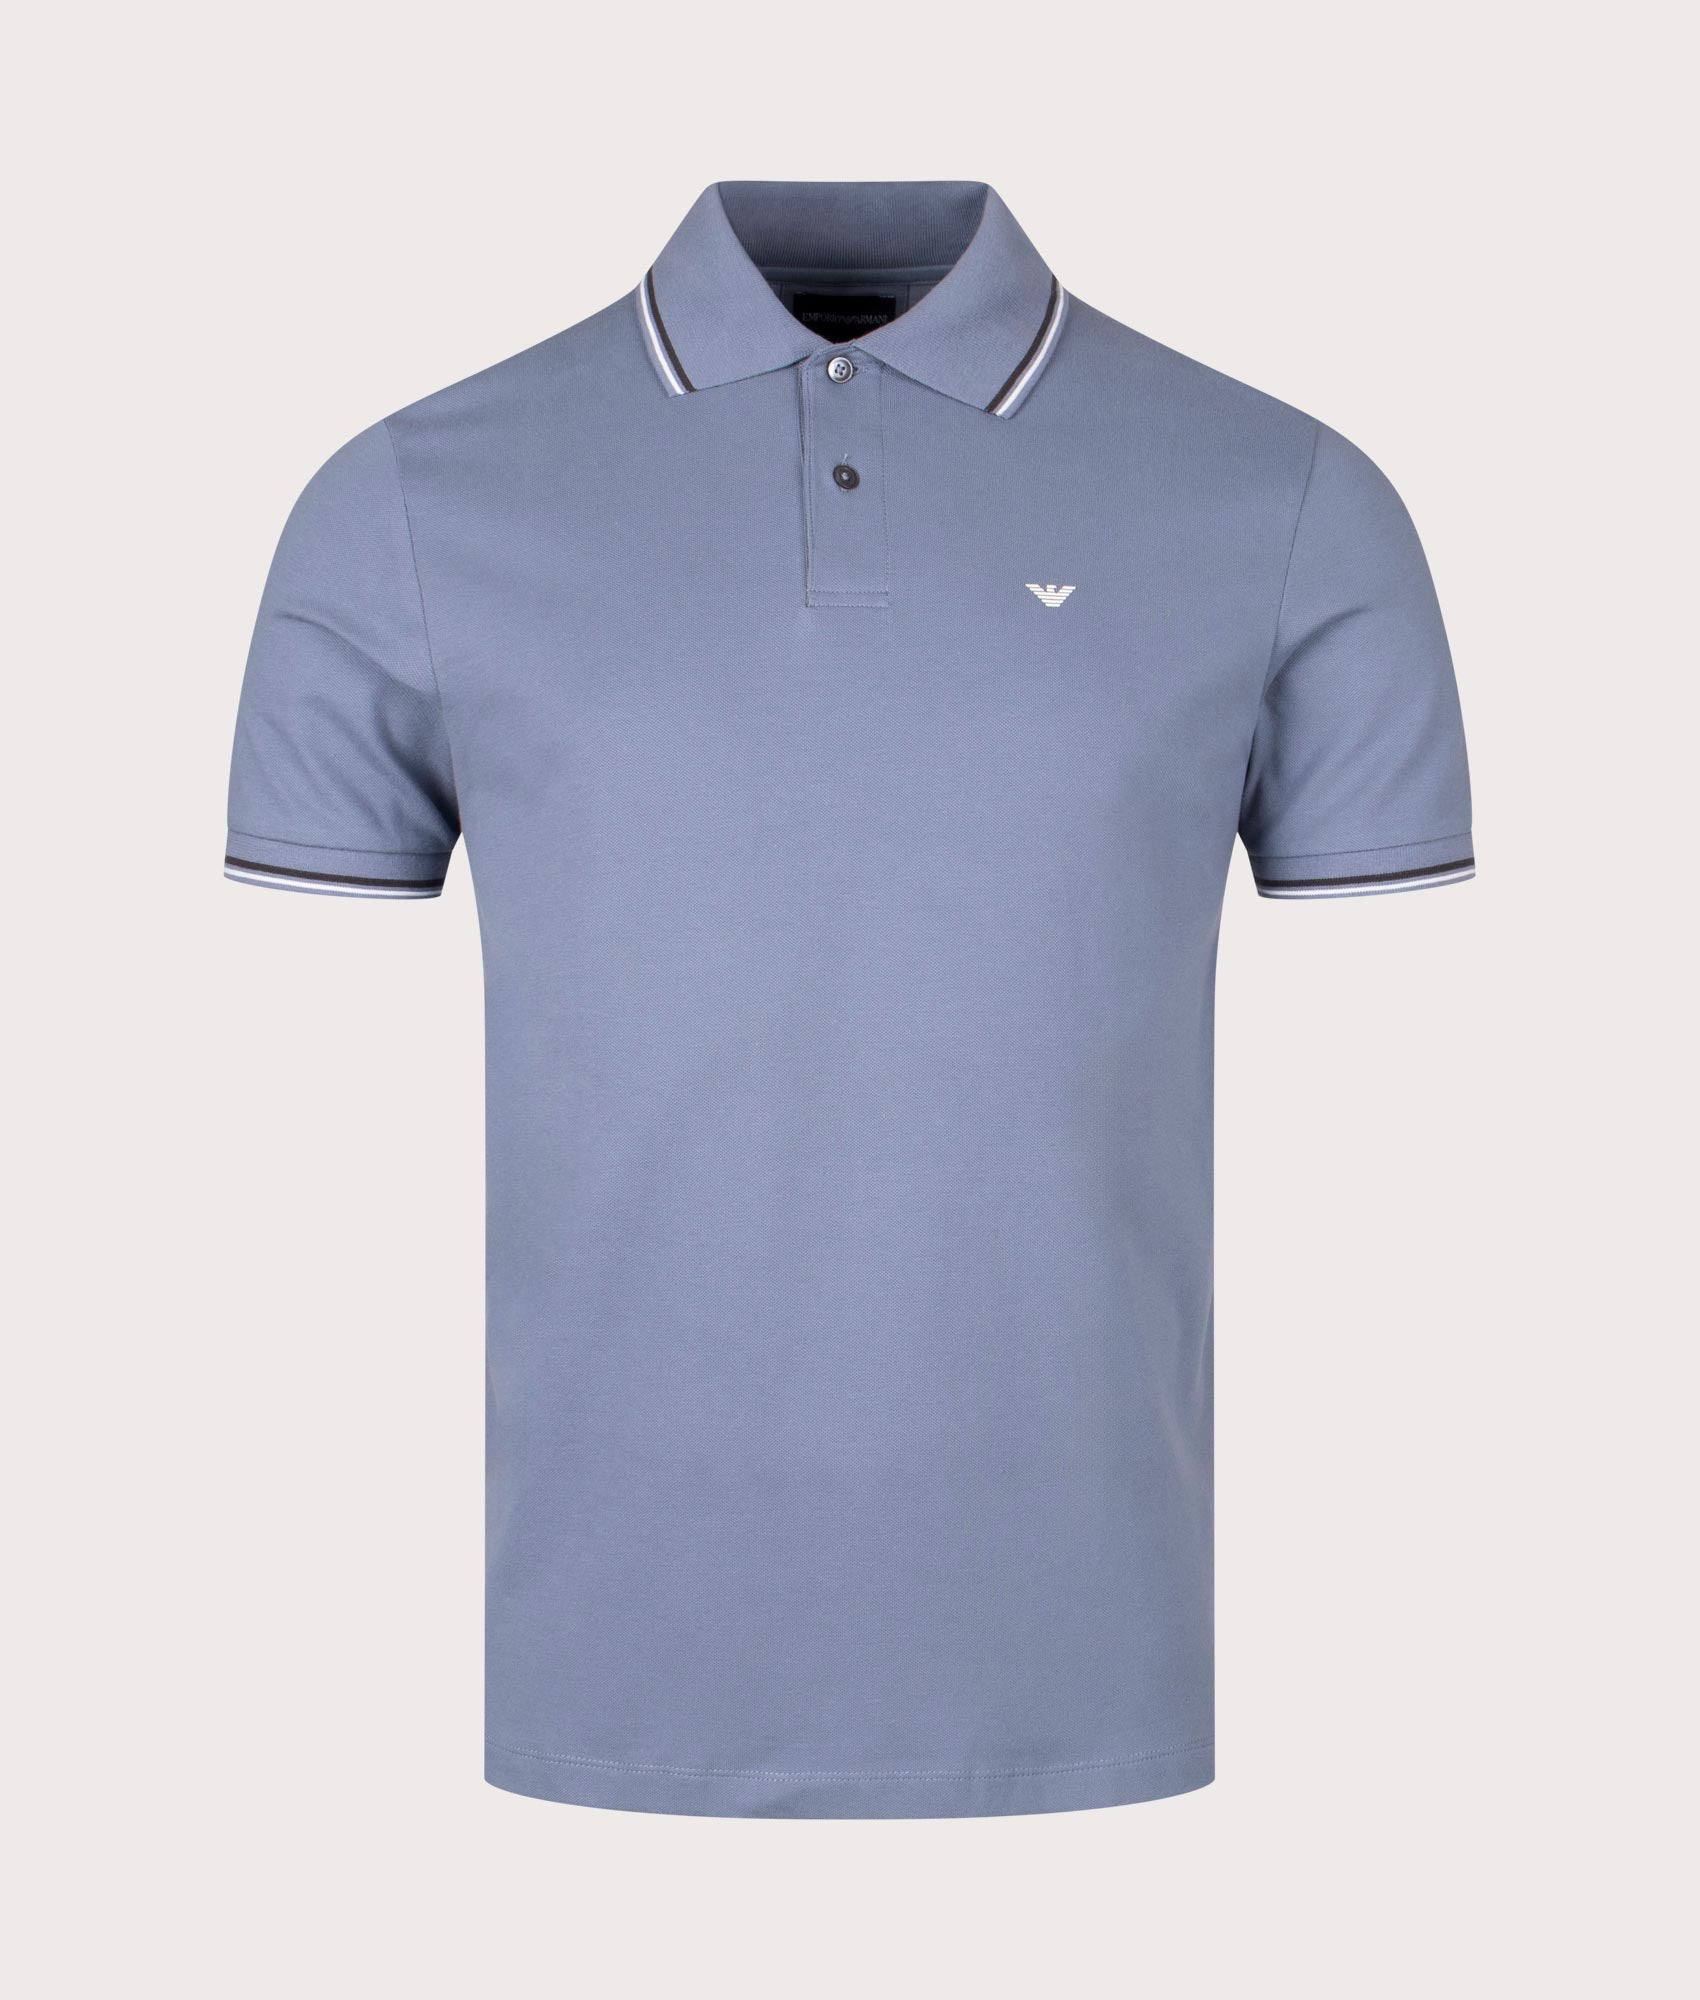 Emporio Armani Mens Essential Stretch Pique Polo Shirt - Colour: 0638 Pietra Focaia - Size: Medium